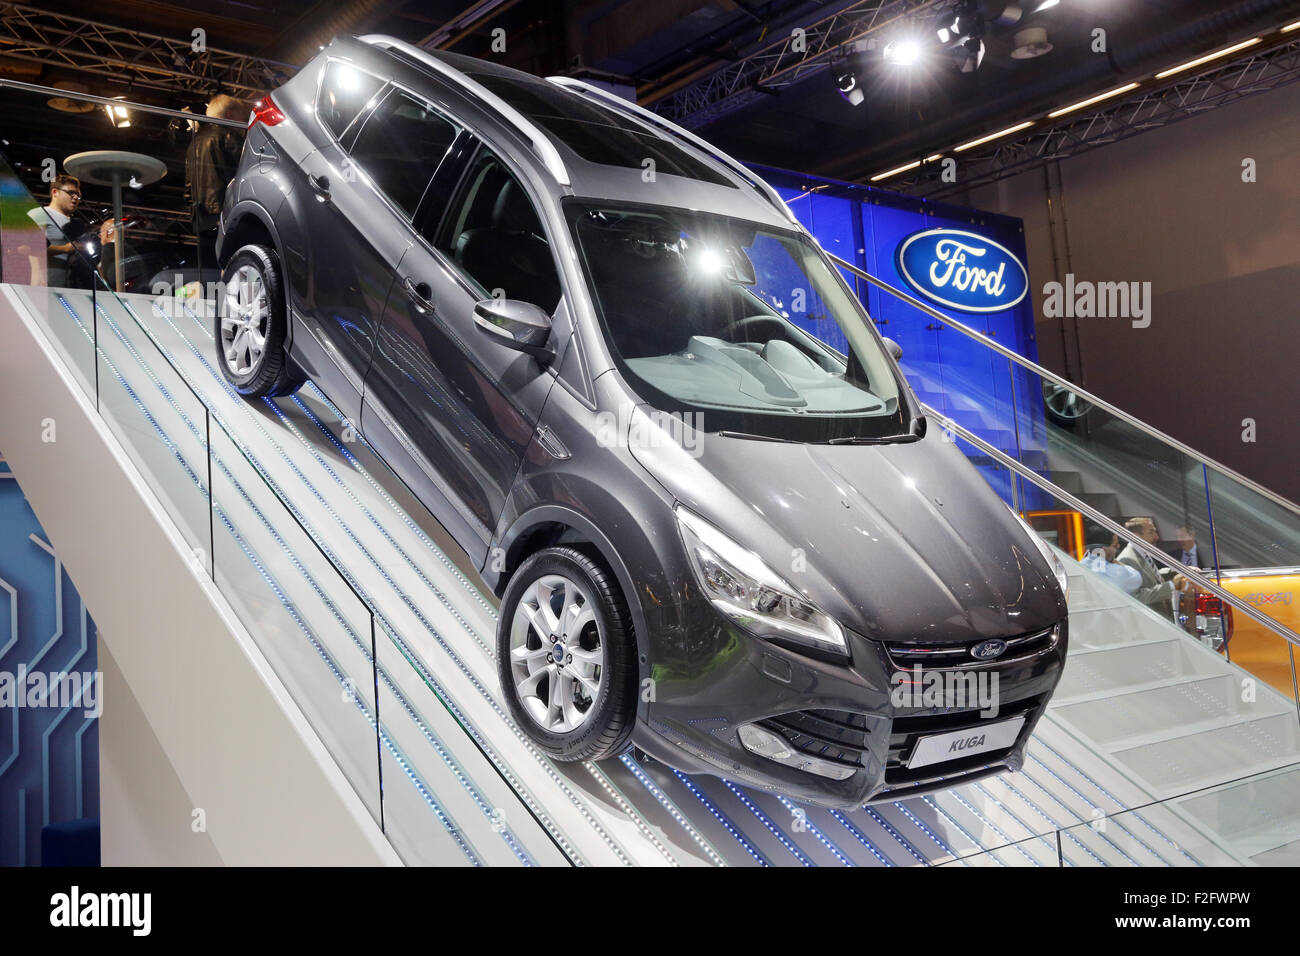 Frankfurt/M, 17.09.2015 - Ford Kuga Titanium (detrás) en el stand de Ford en el 66º Salón Internacional del Automóvil IAA 2015 (Internationale Automobil Ausstellung IAA) en Frankfurt/Main, Alemania Foto de stock